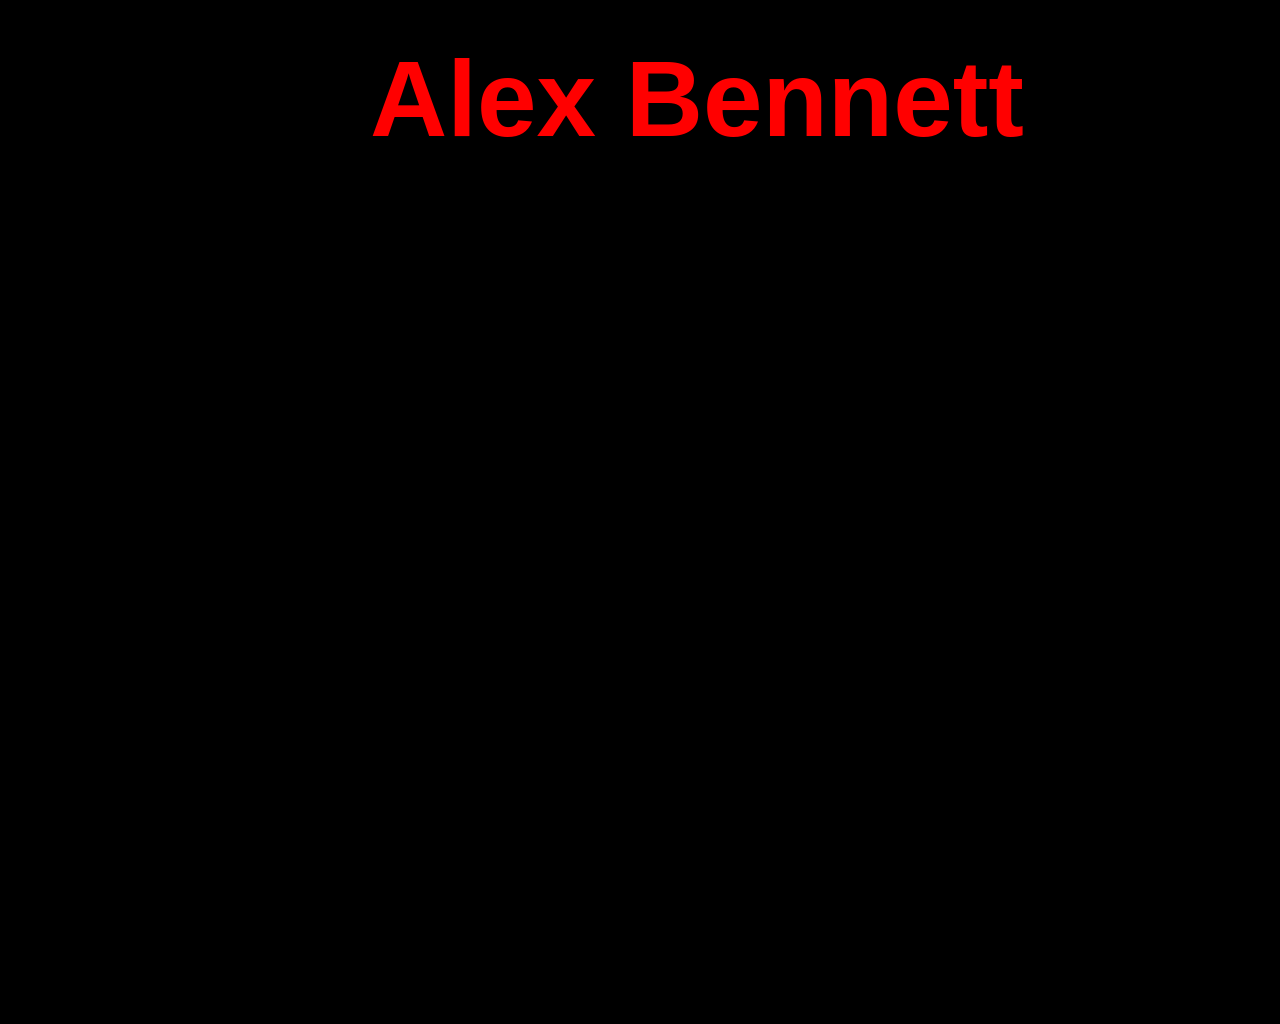 alexbennett.com